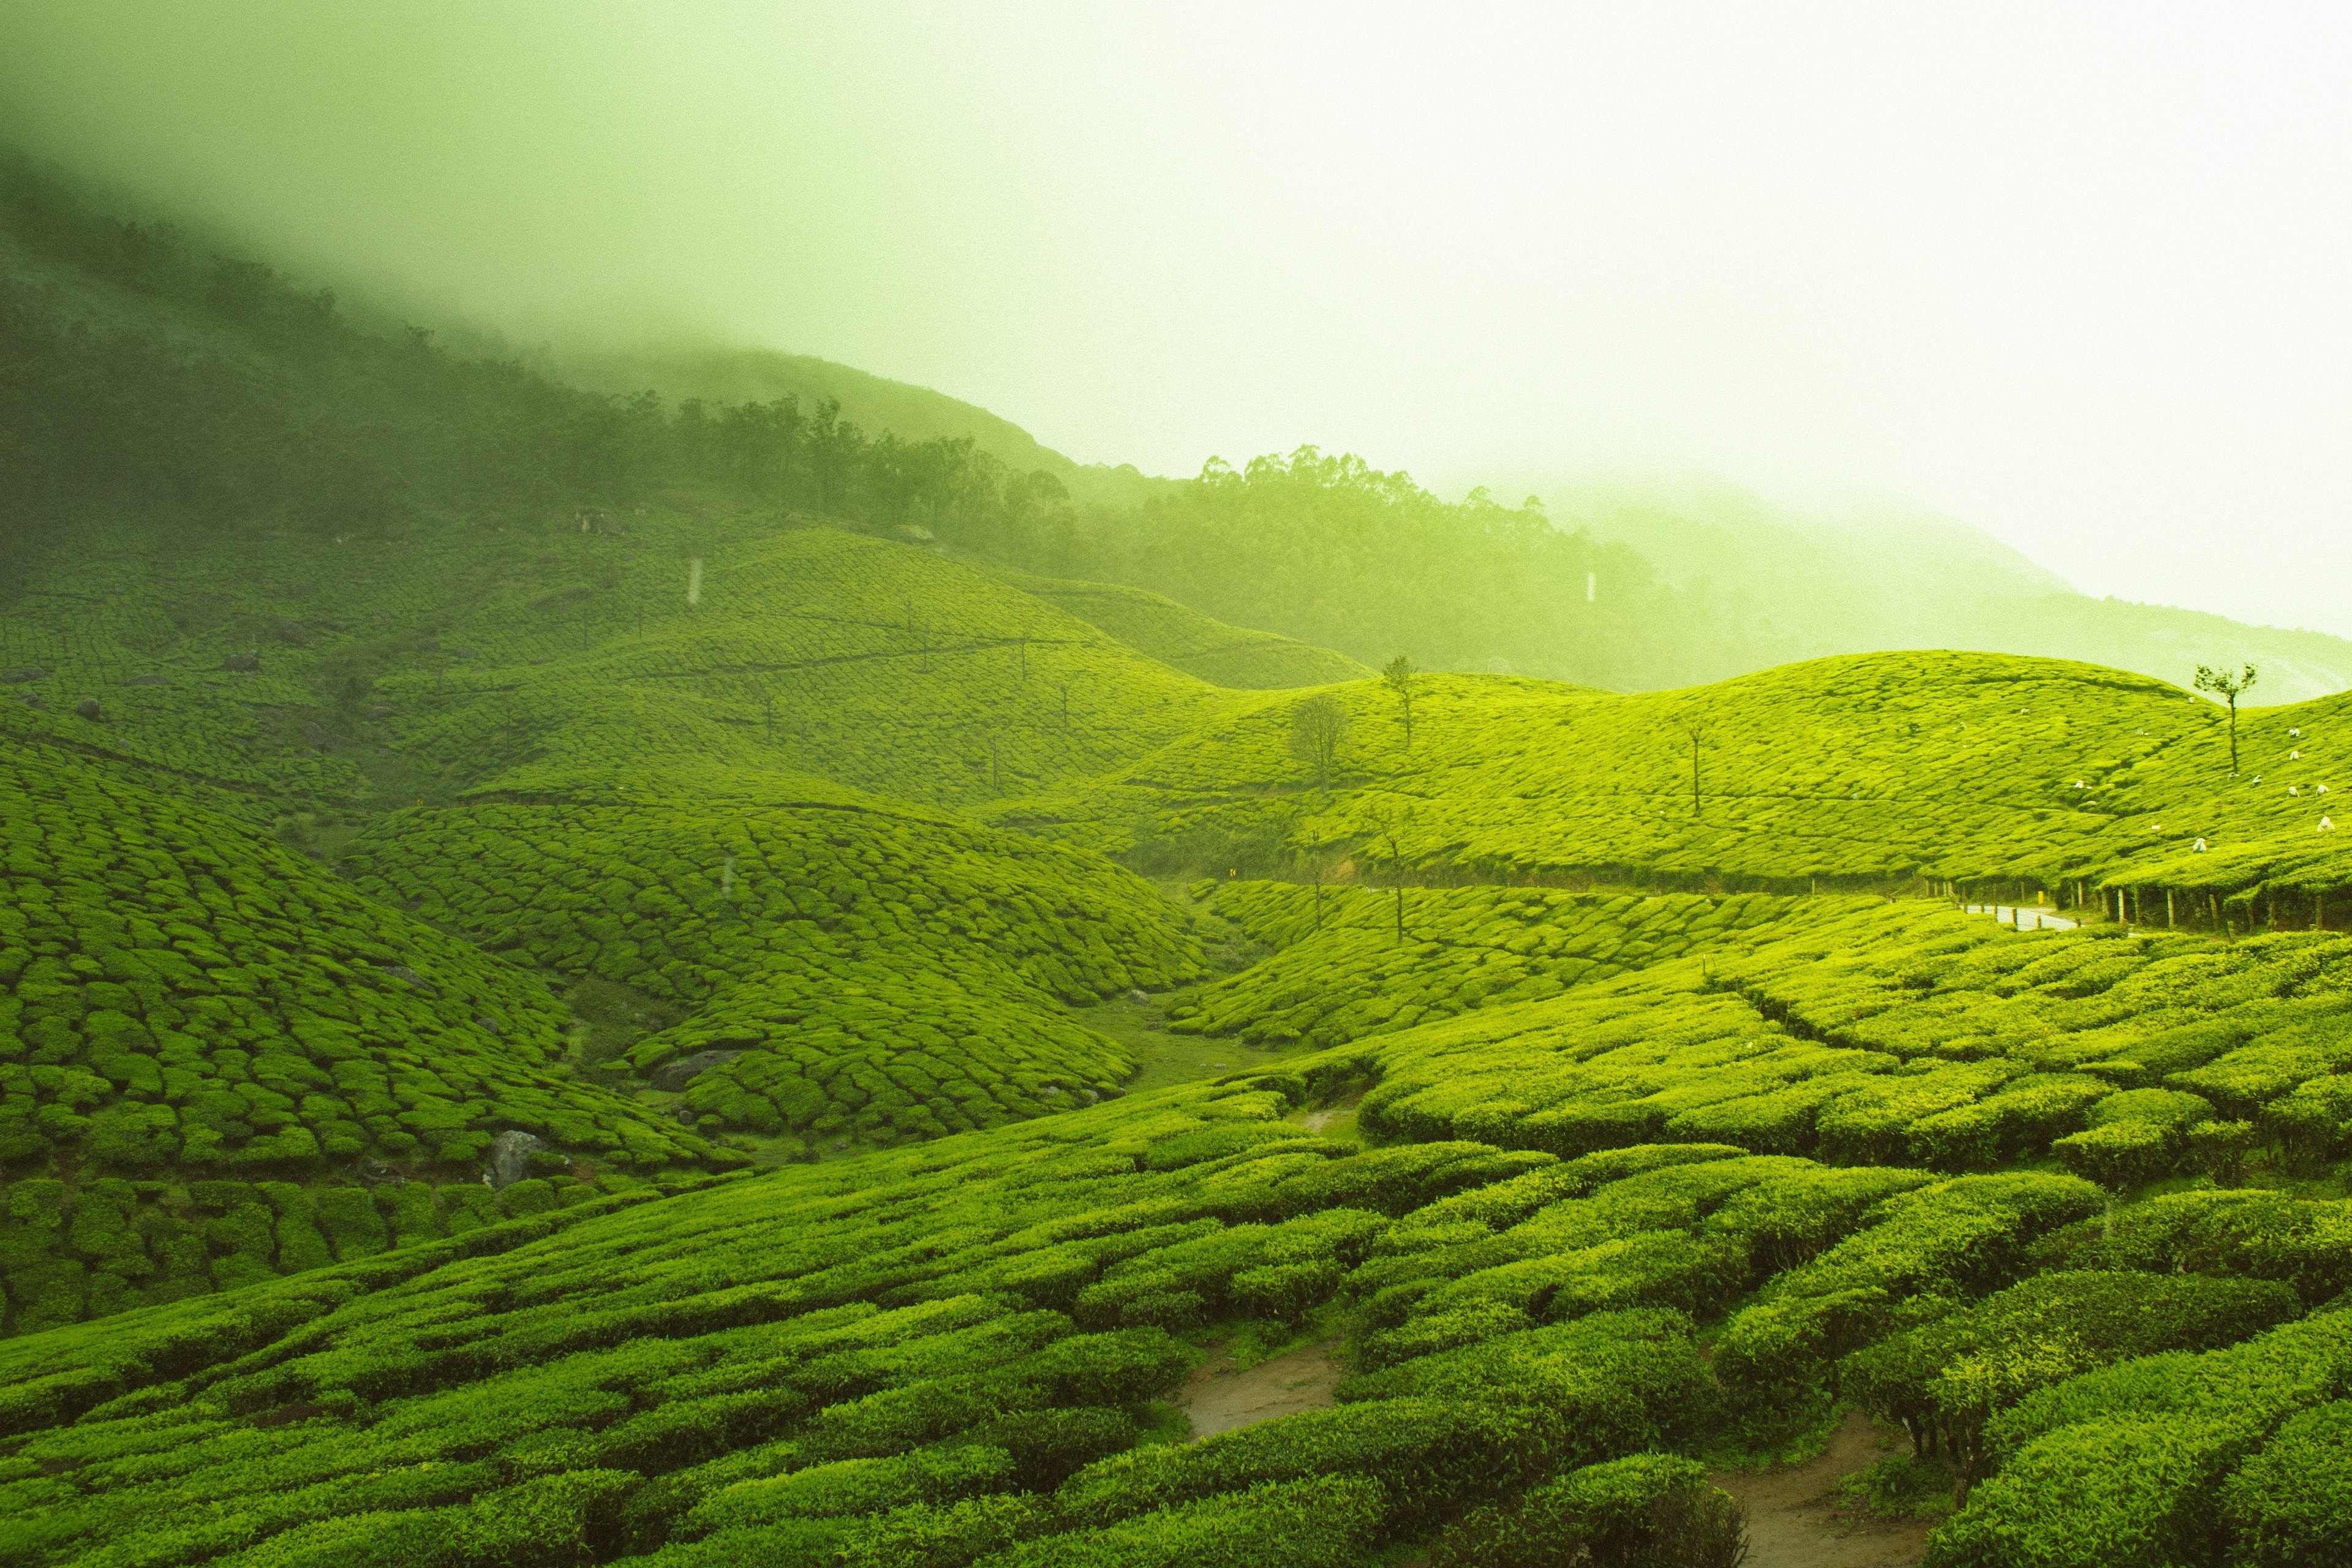 Munnar – Love amid the tea gardens